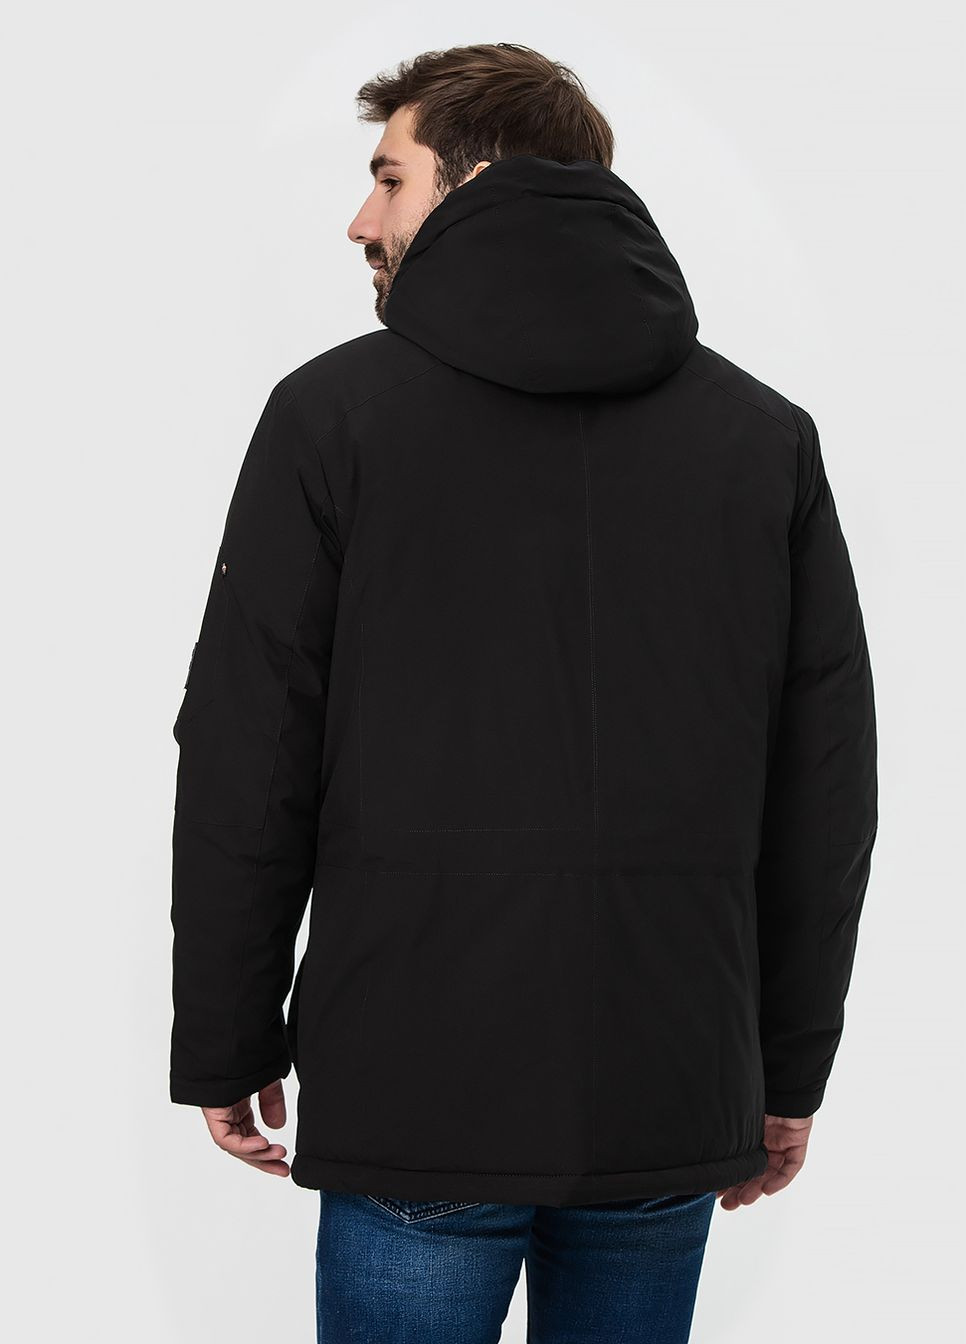 Черная зимняя удлиненная мужская куртка модель Black Vinyl 21-1875